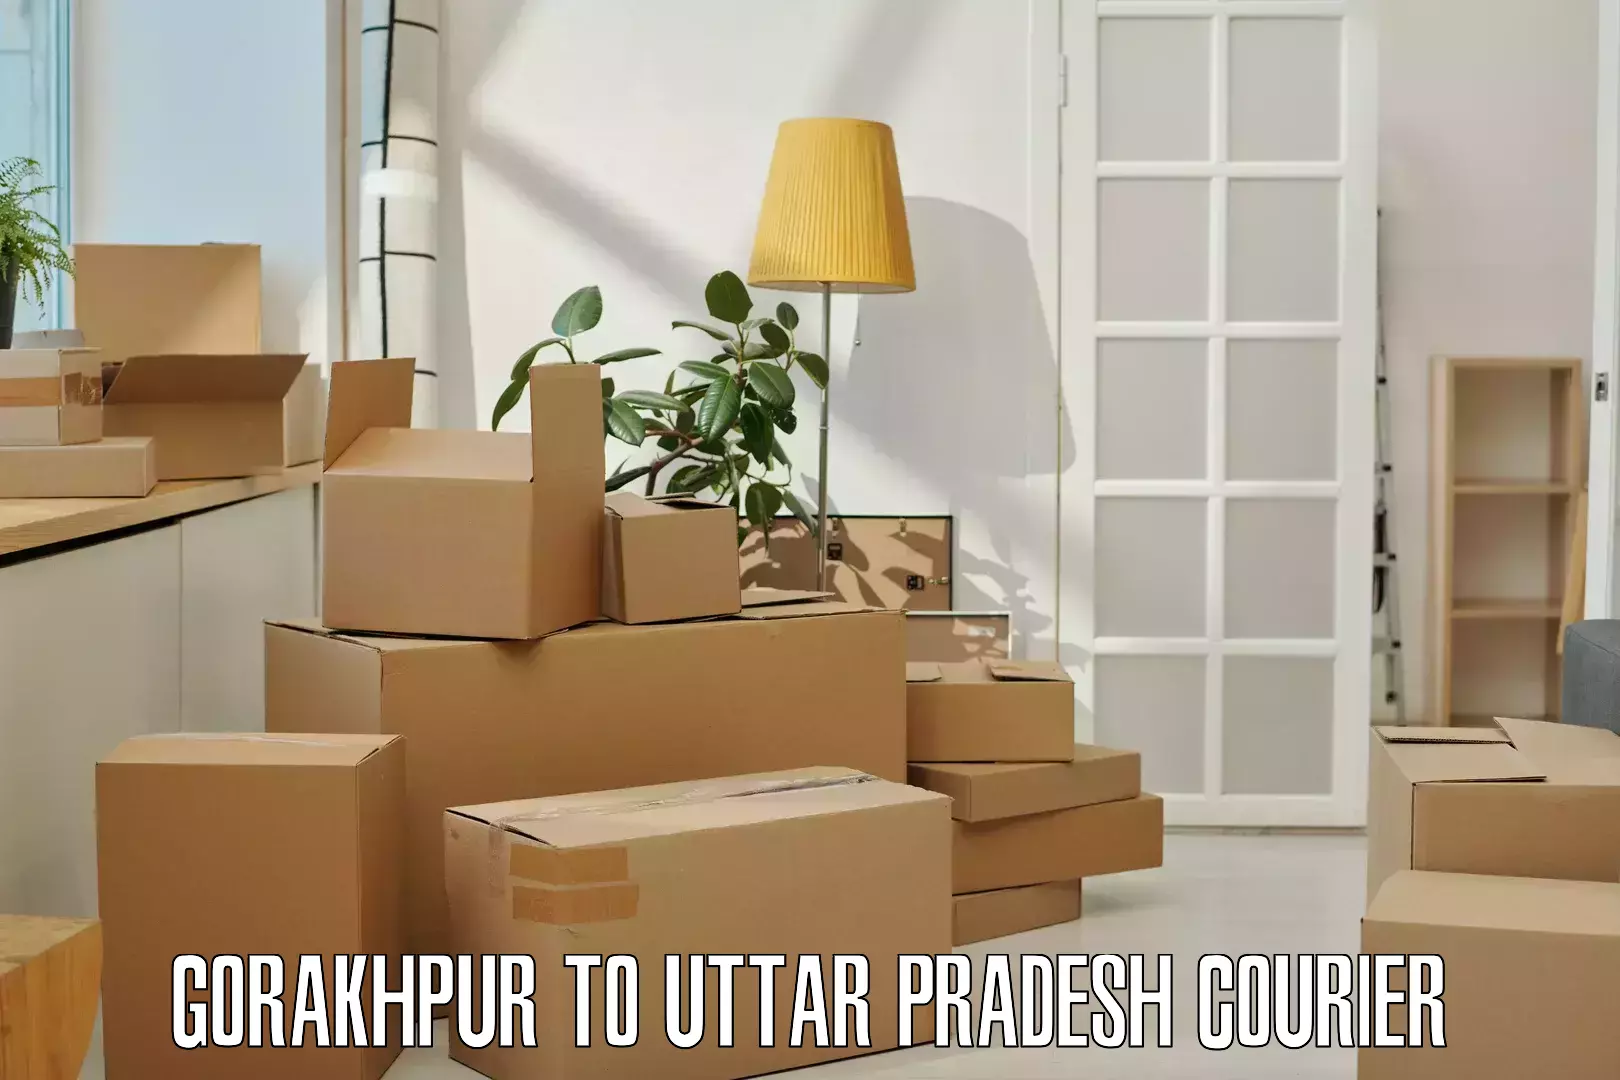 Parcel delivery automation Gorakhpur to Ballia